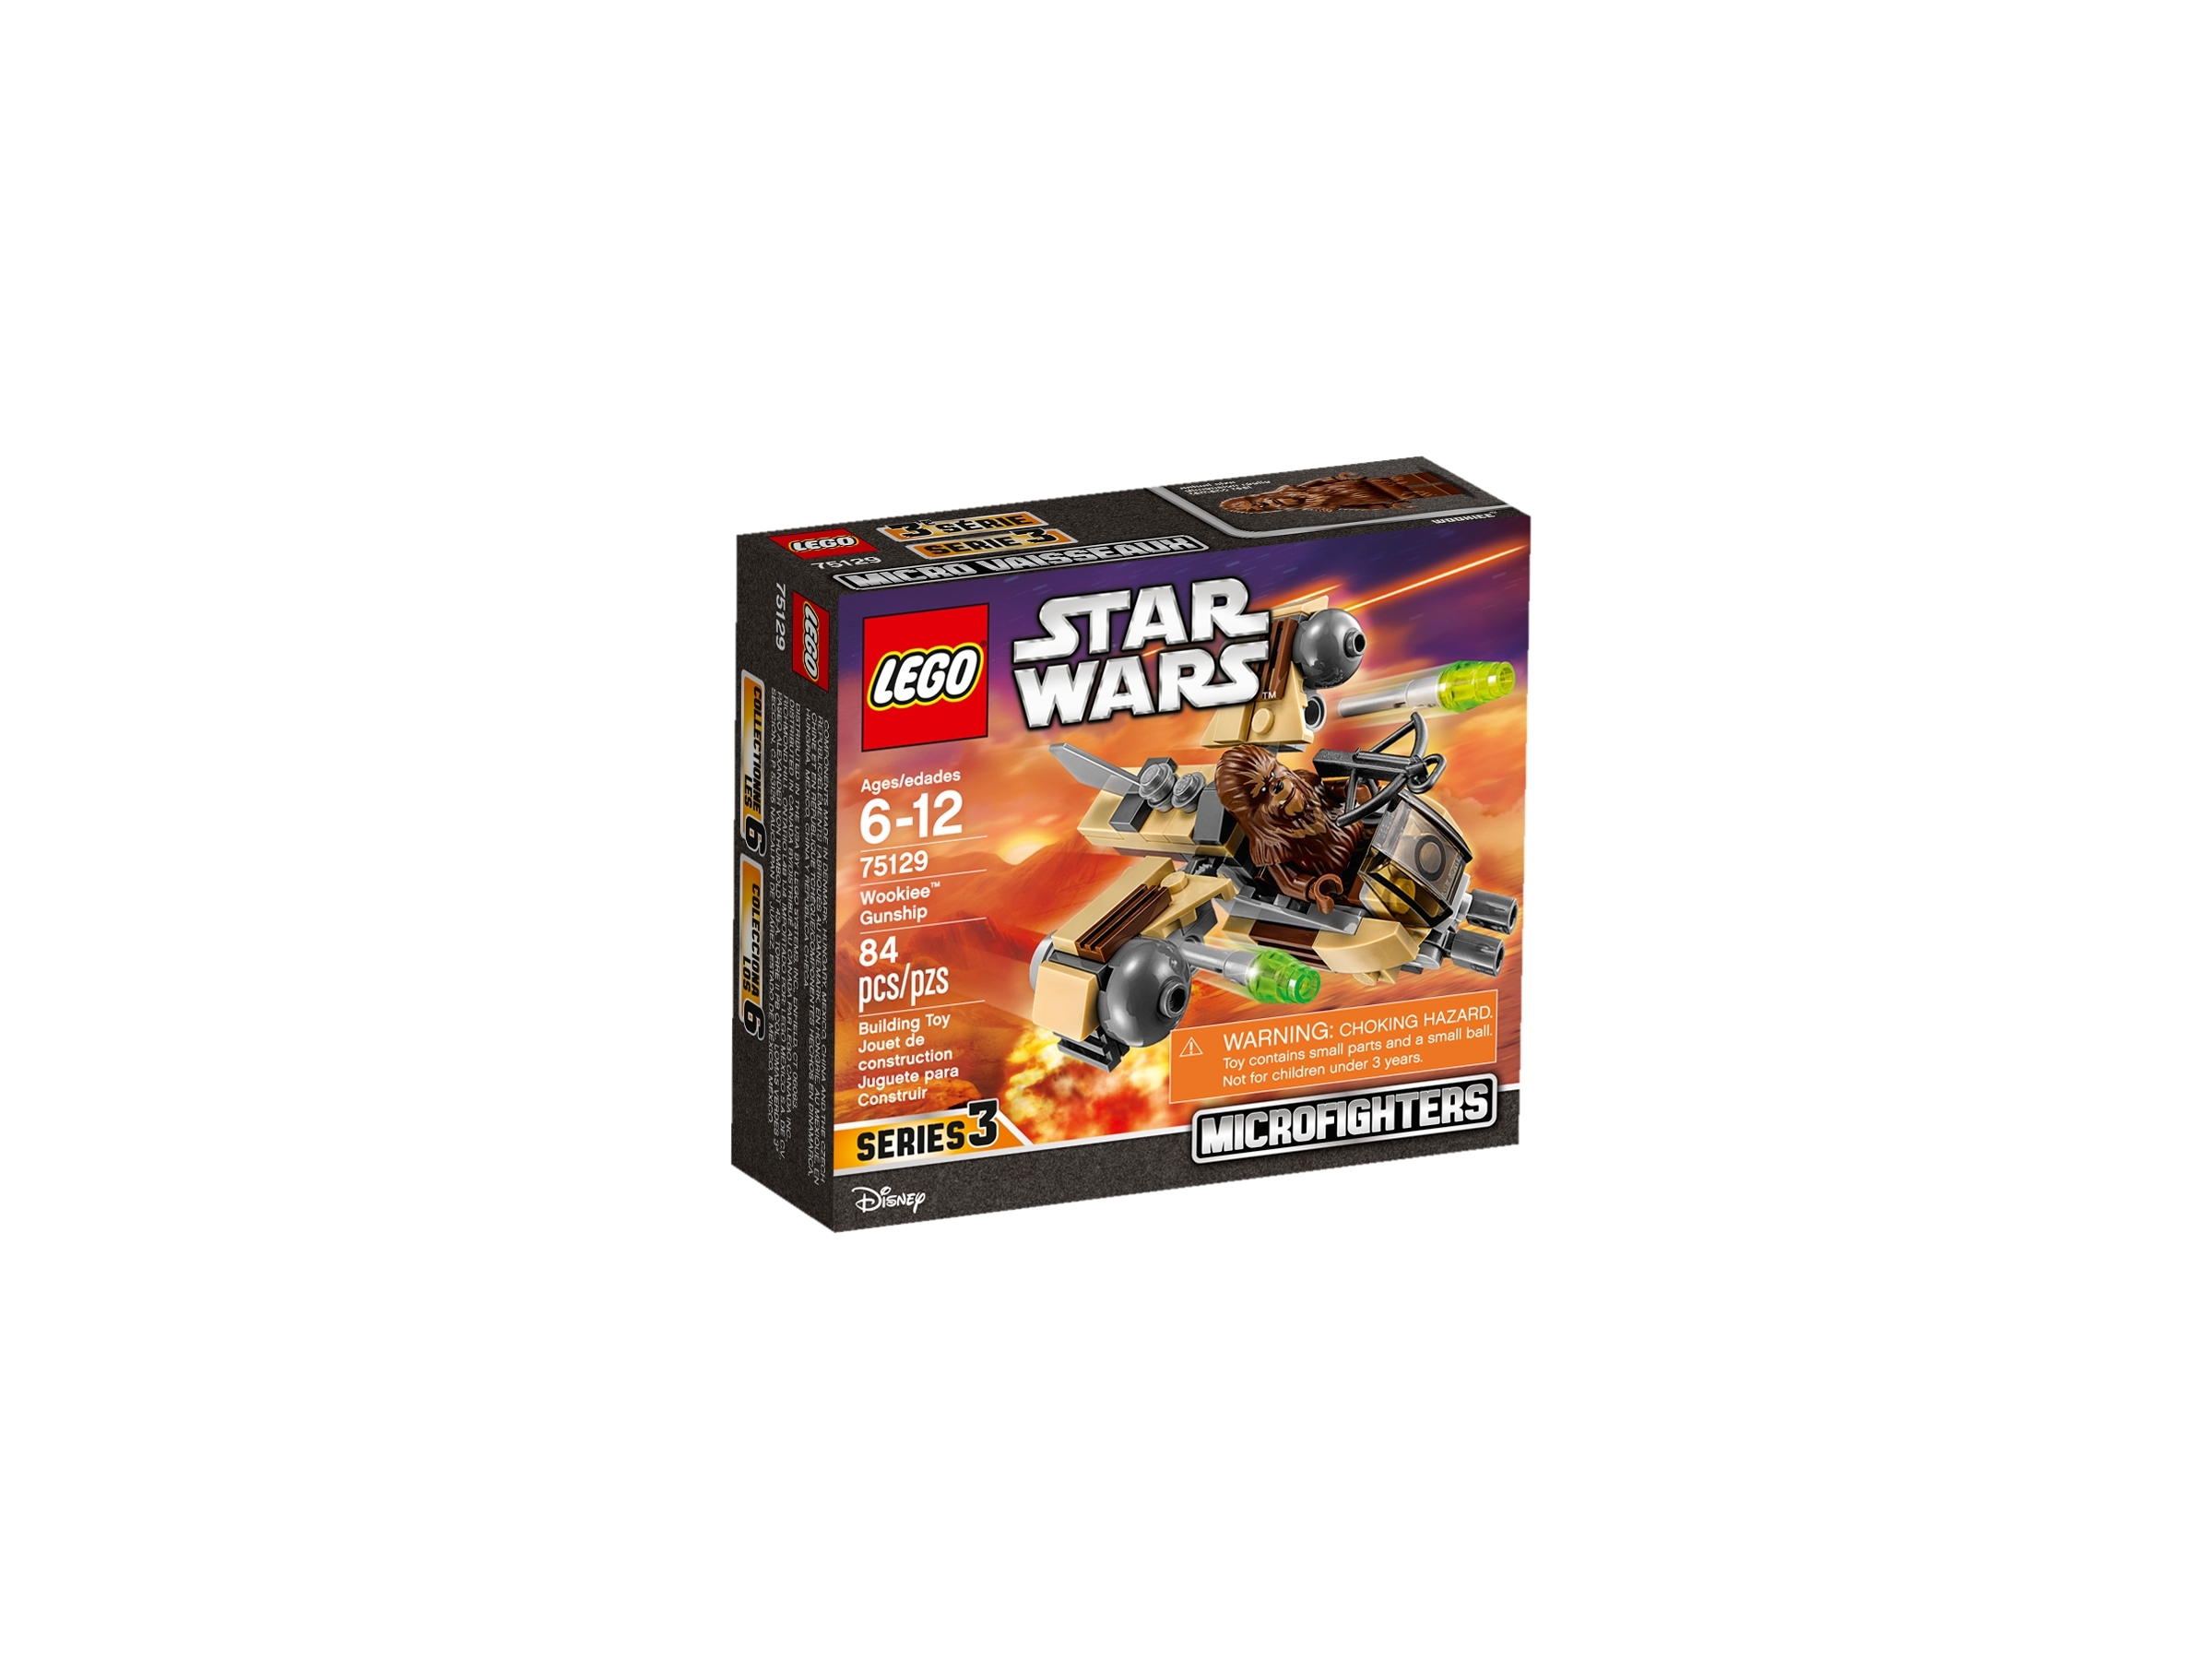 Lego Star Wars 75129 Microfighters  Series 3 Wookiee Gunship Wookiee Warrior BA